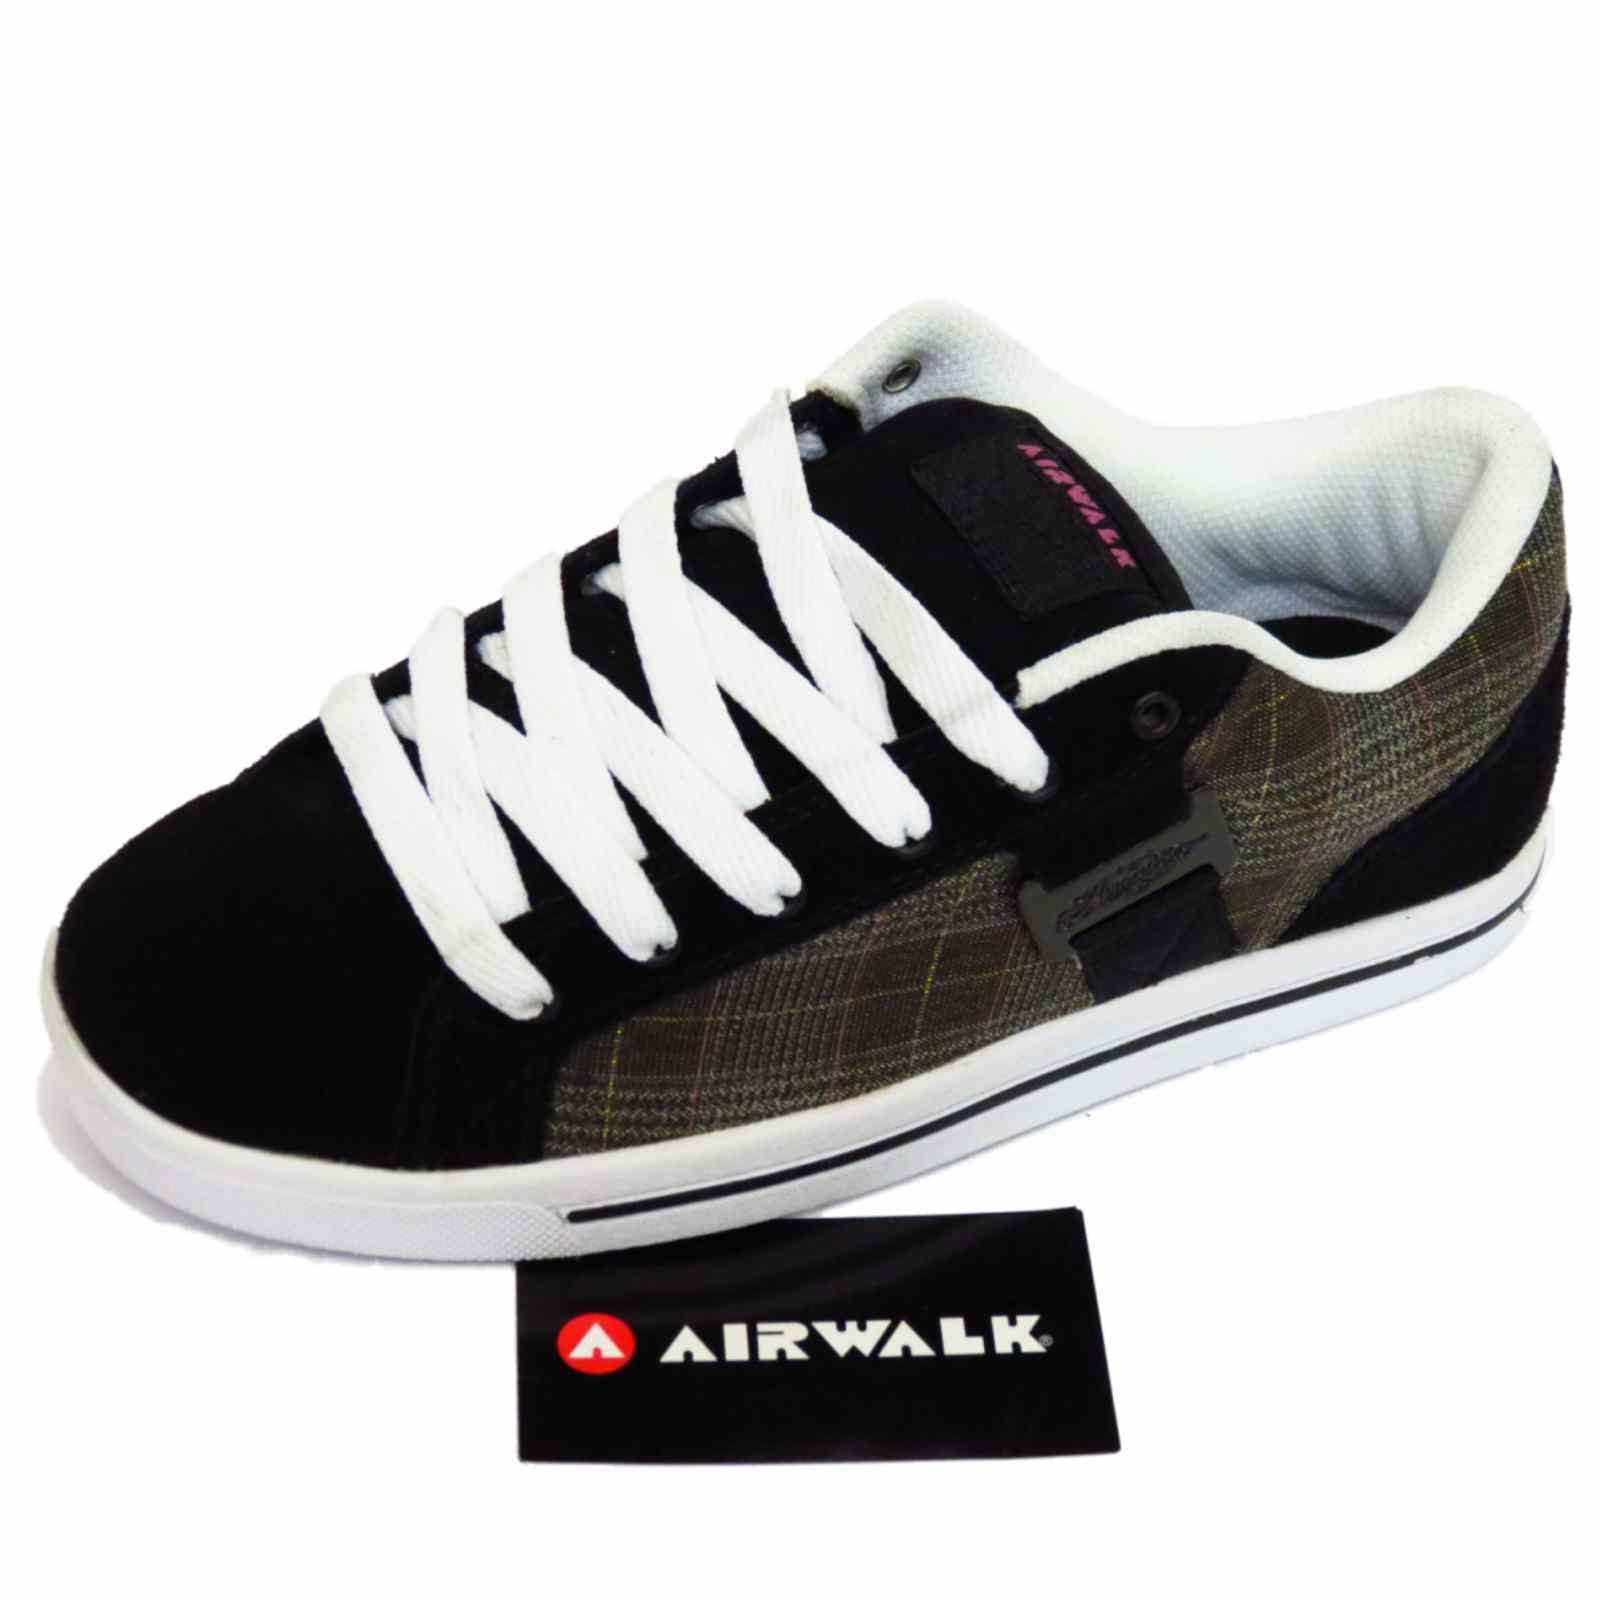 airwalk ladies shoes